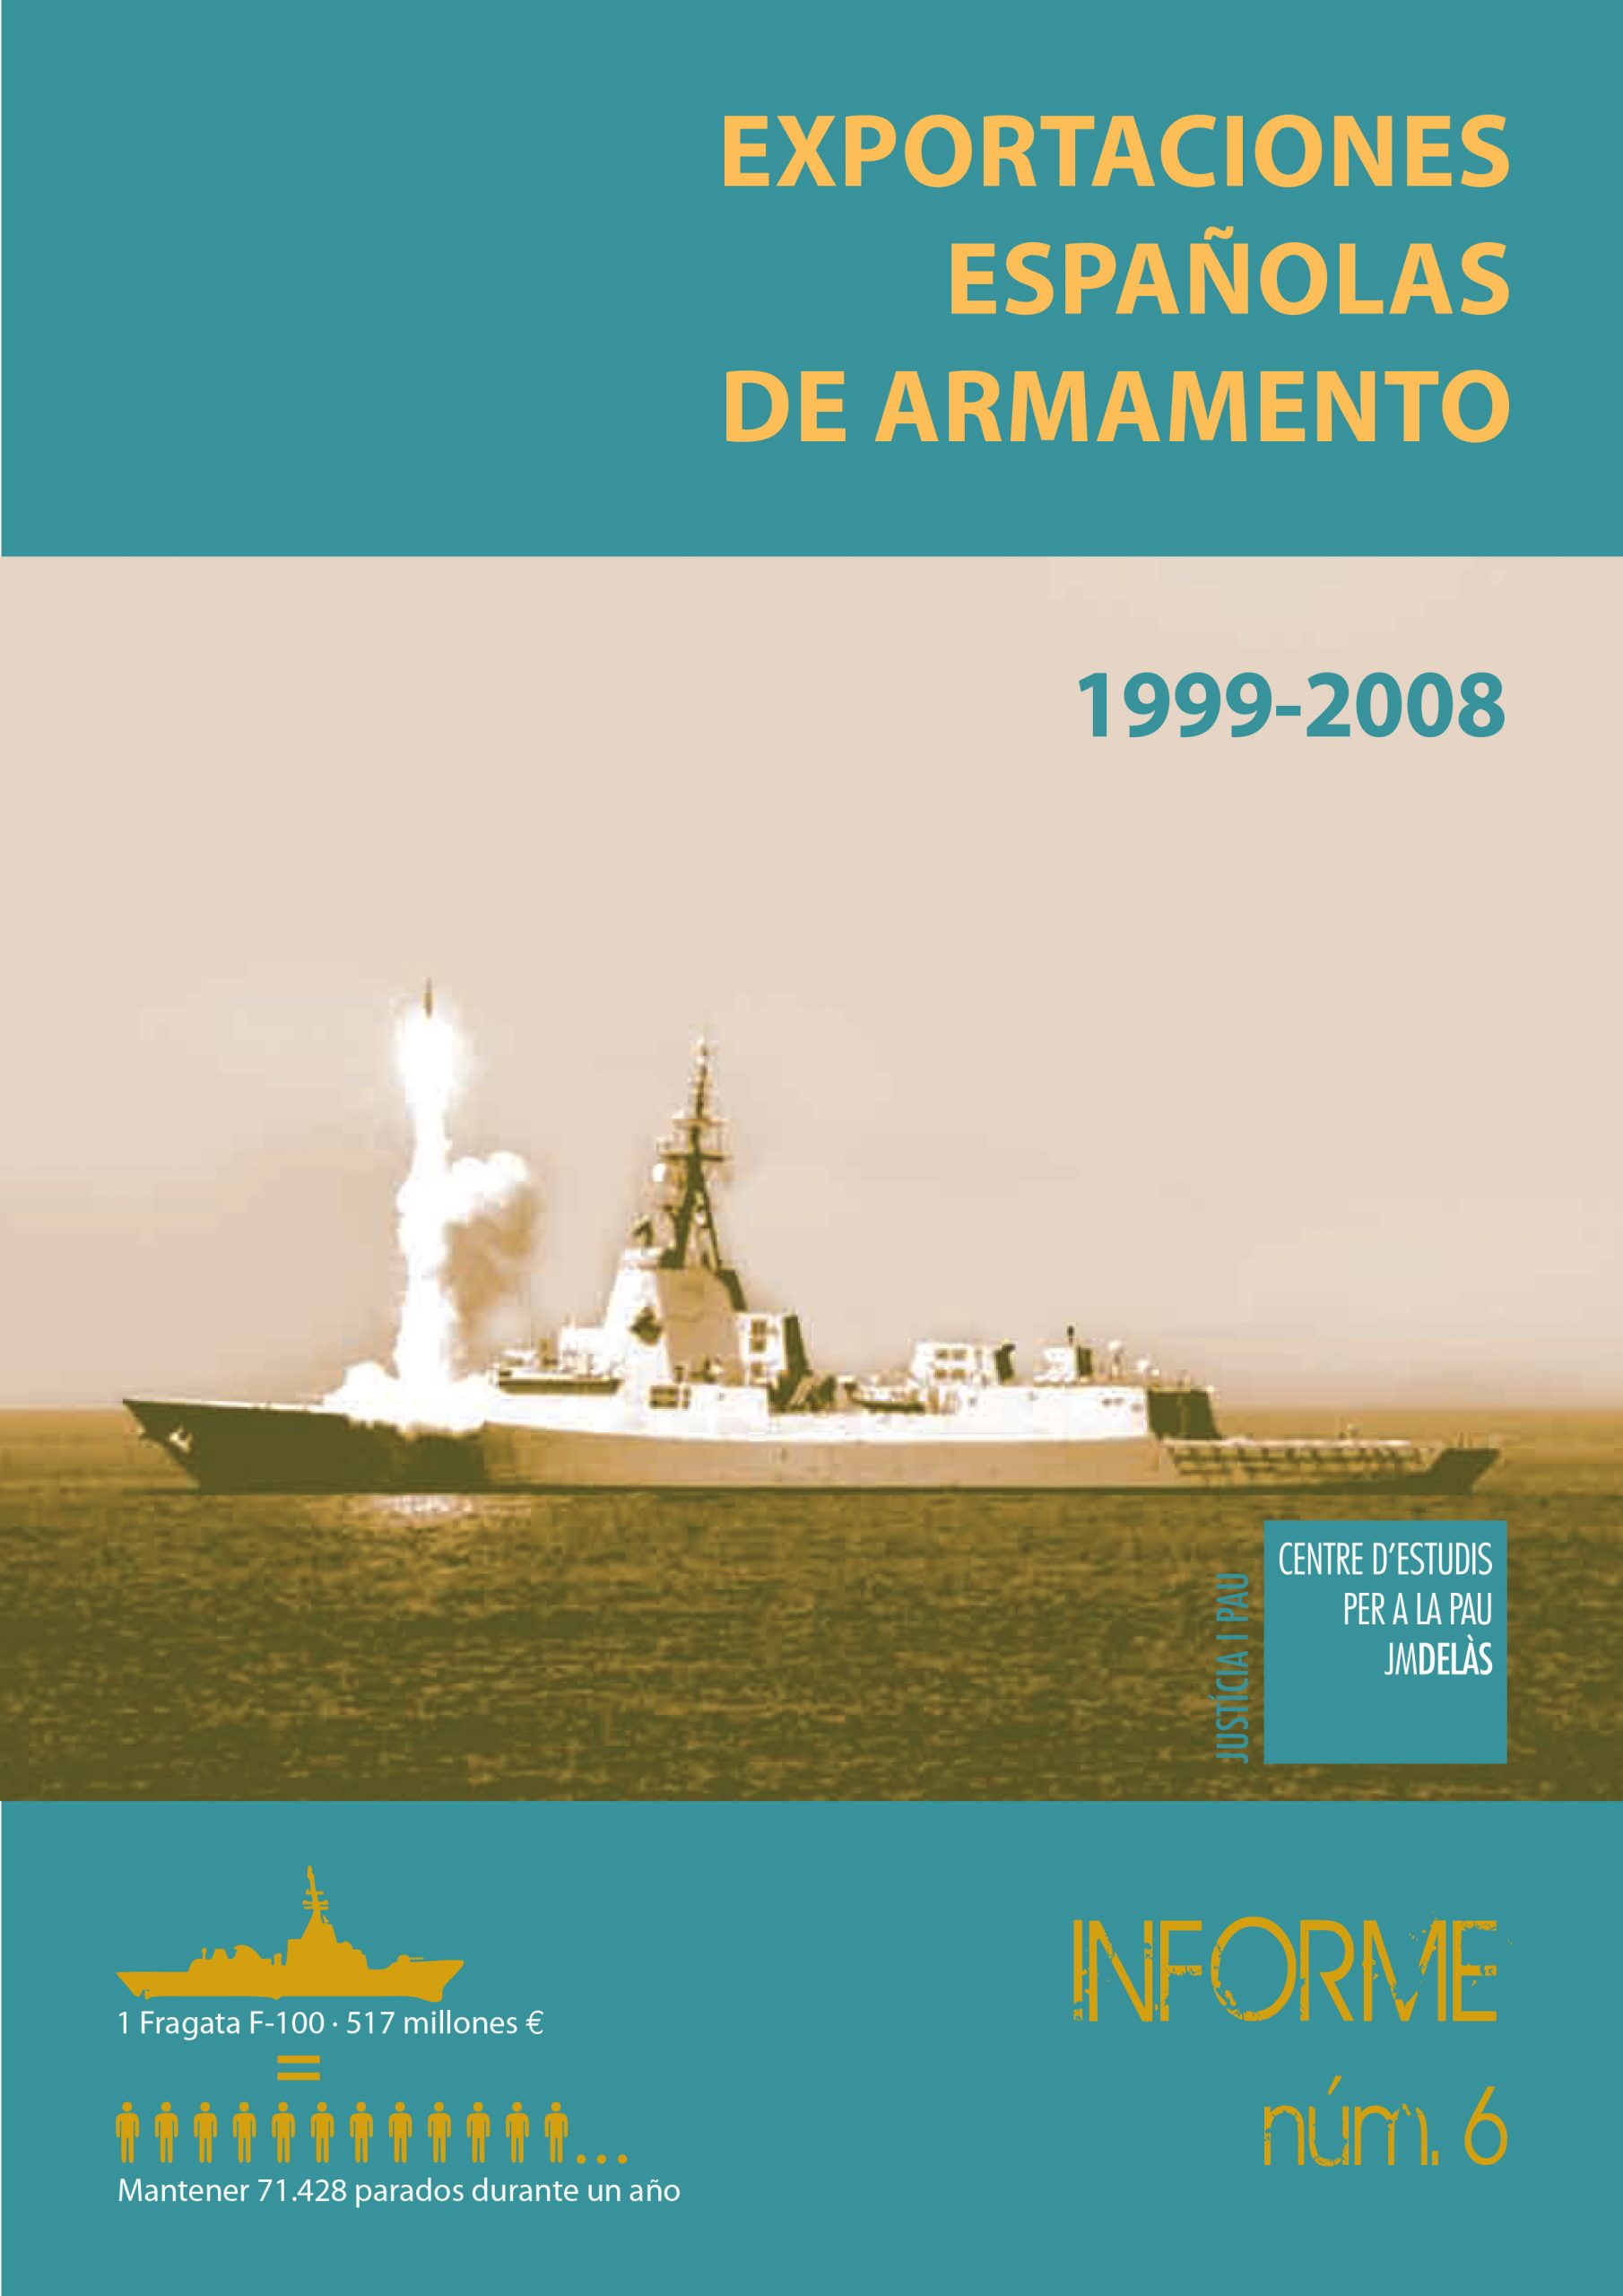 Informe 6: Exportaciones españolas de armamento 1999-2008